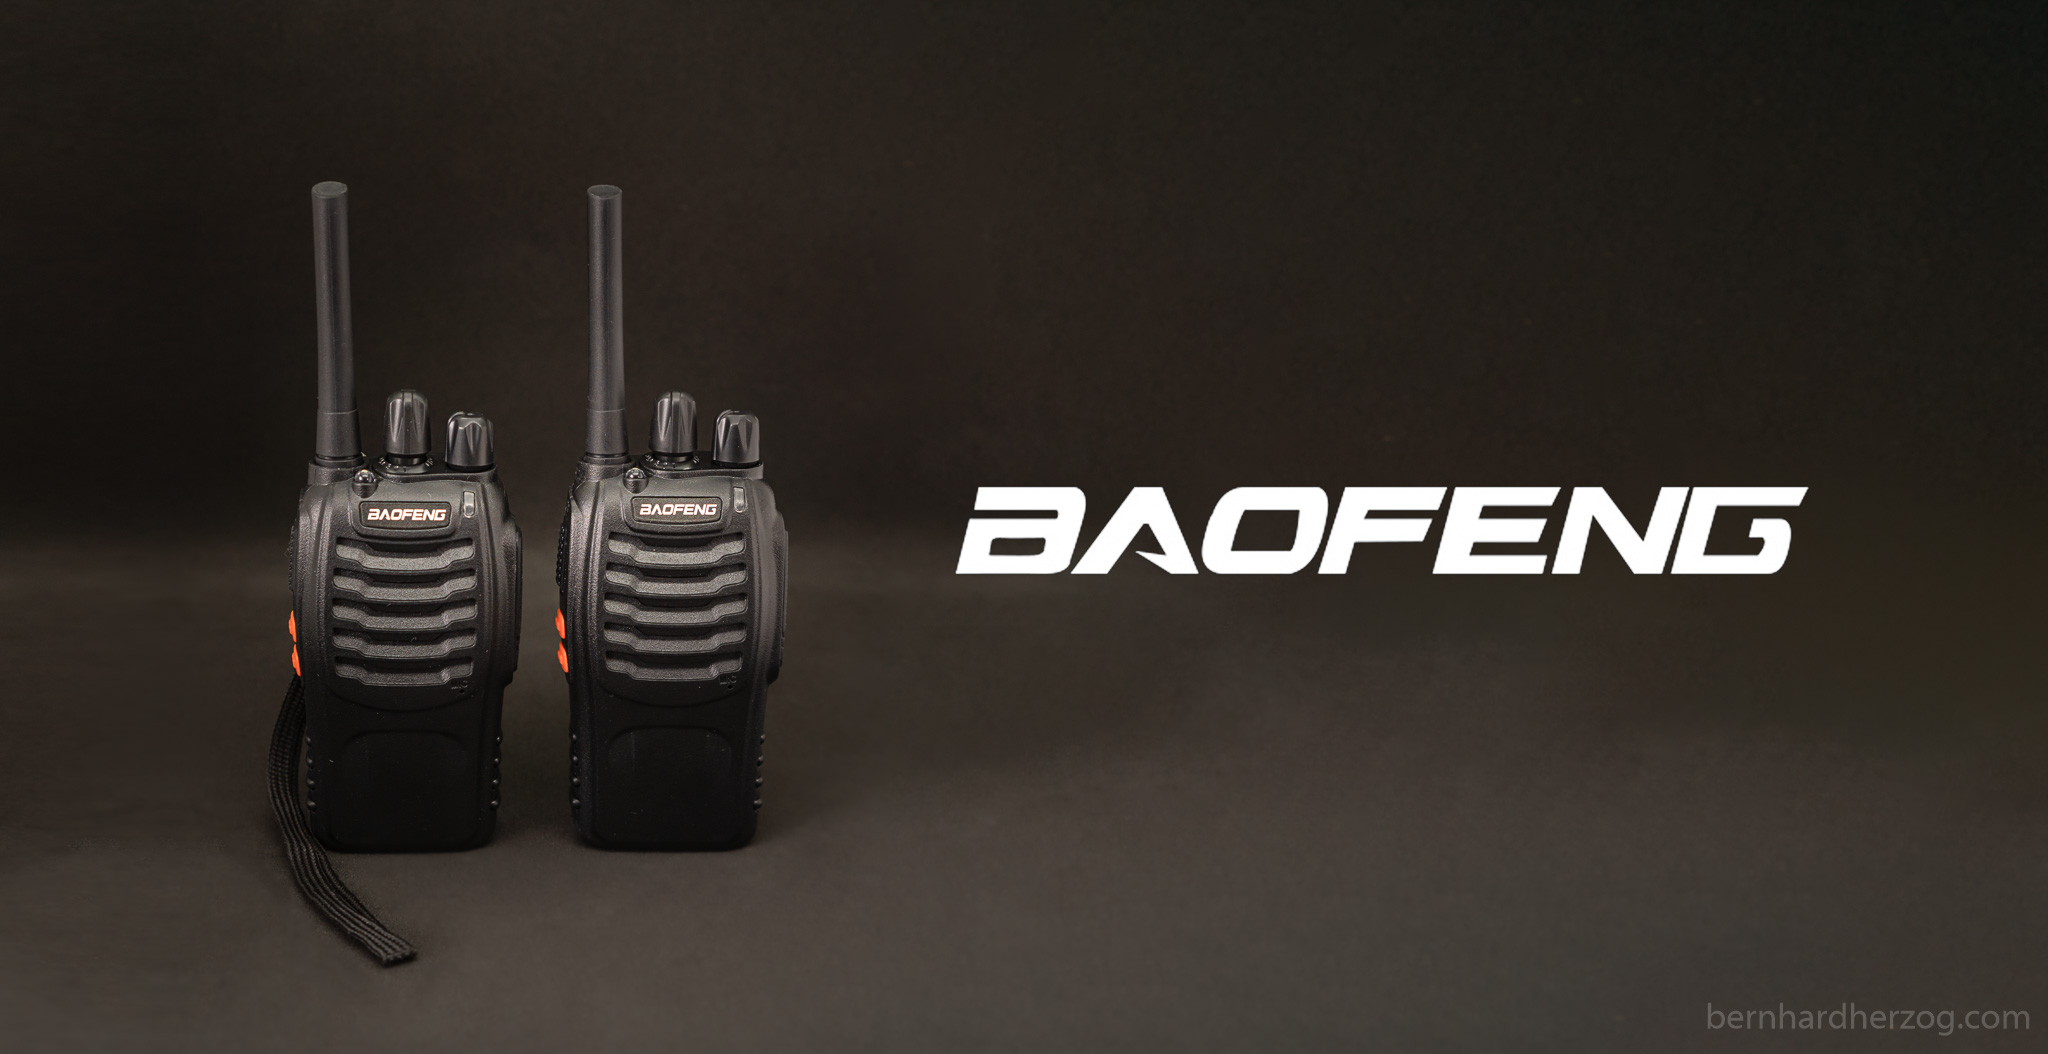 Das ideale Funkgerät für Kids – Baofeng BF-88E im Test (Nestling/Radioddity/Retevis)